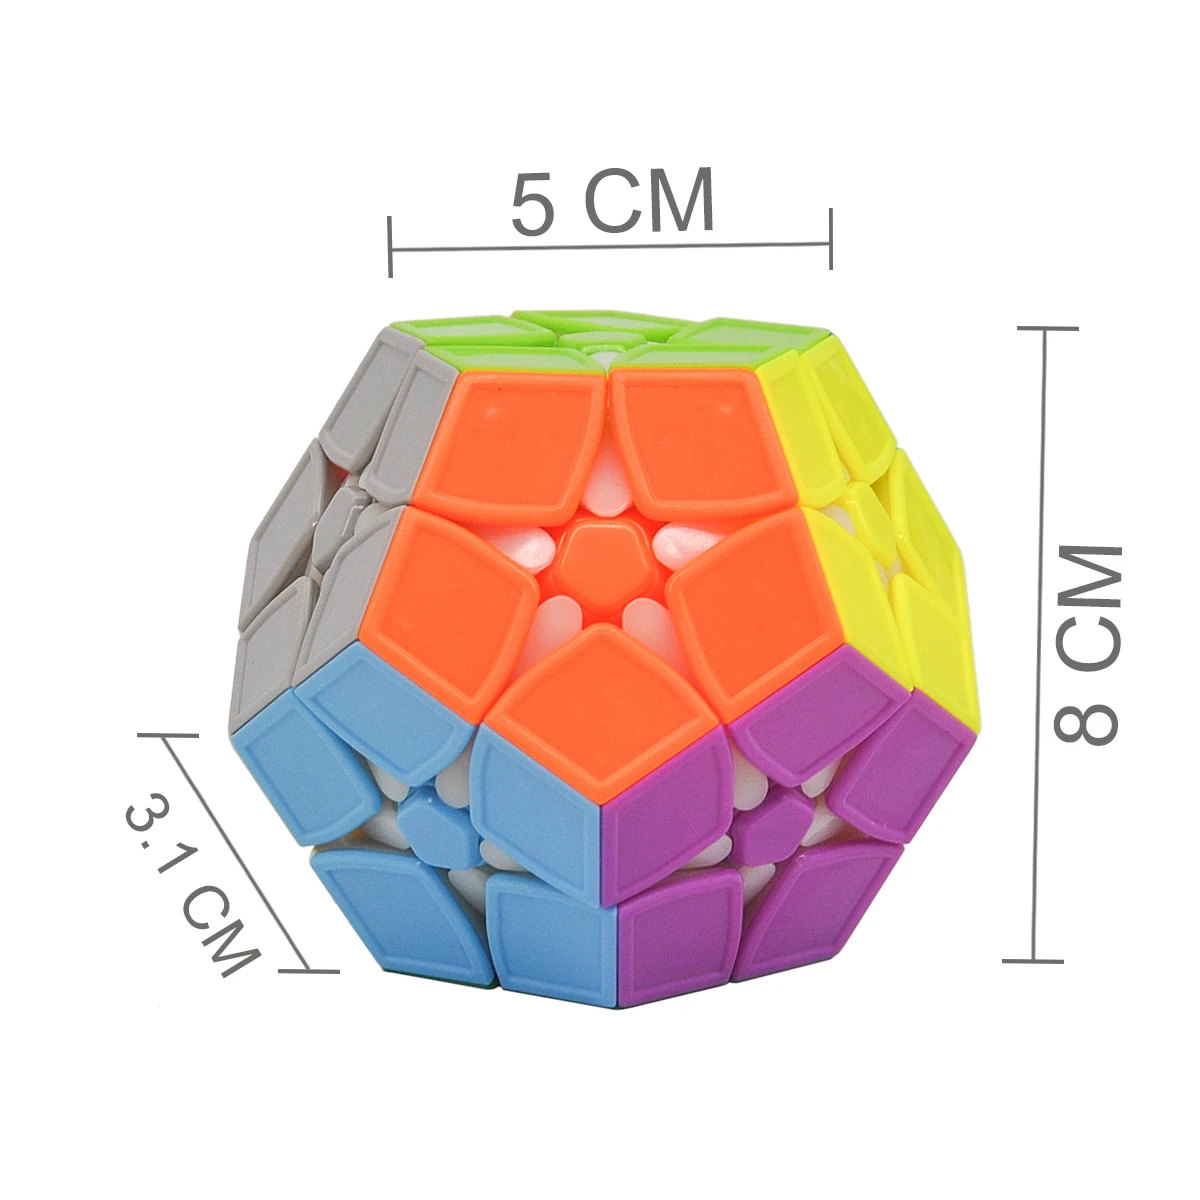 2rd заказ магический куб-мегаминкс без наклеек Додекаэдр скоростные кубики головоломка Твист Головоломка Cubo Magico игрушки для детей